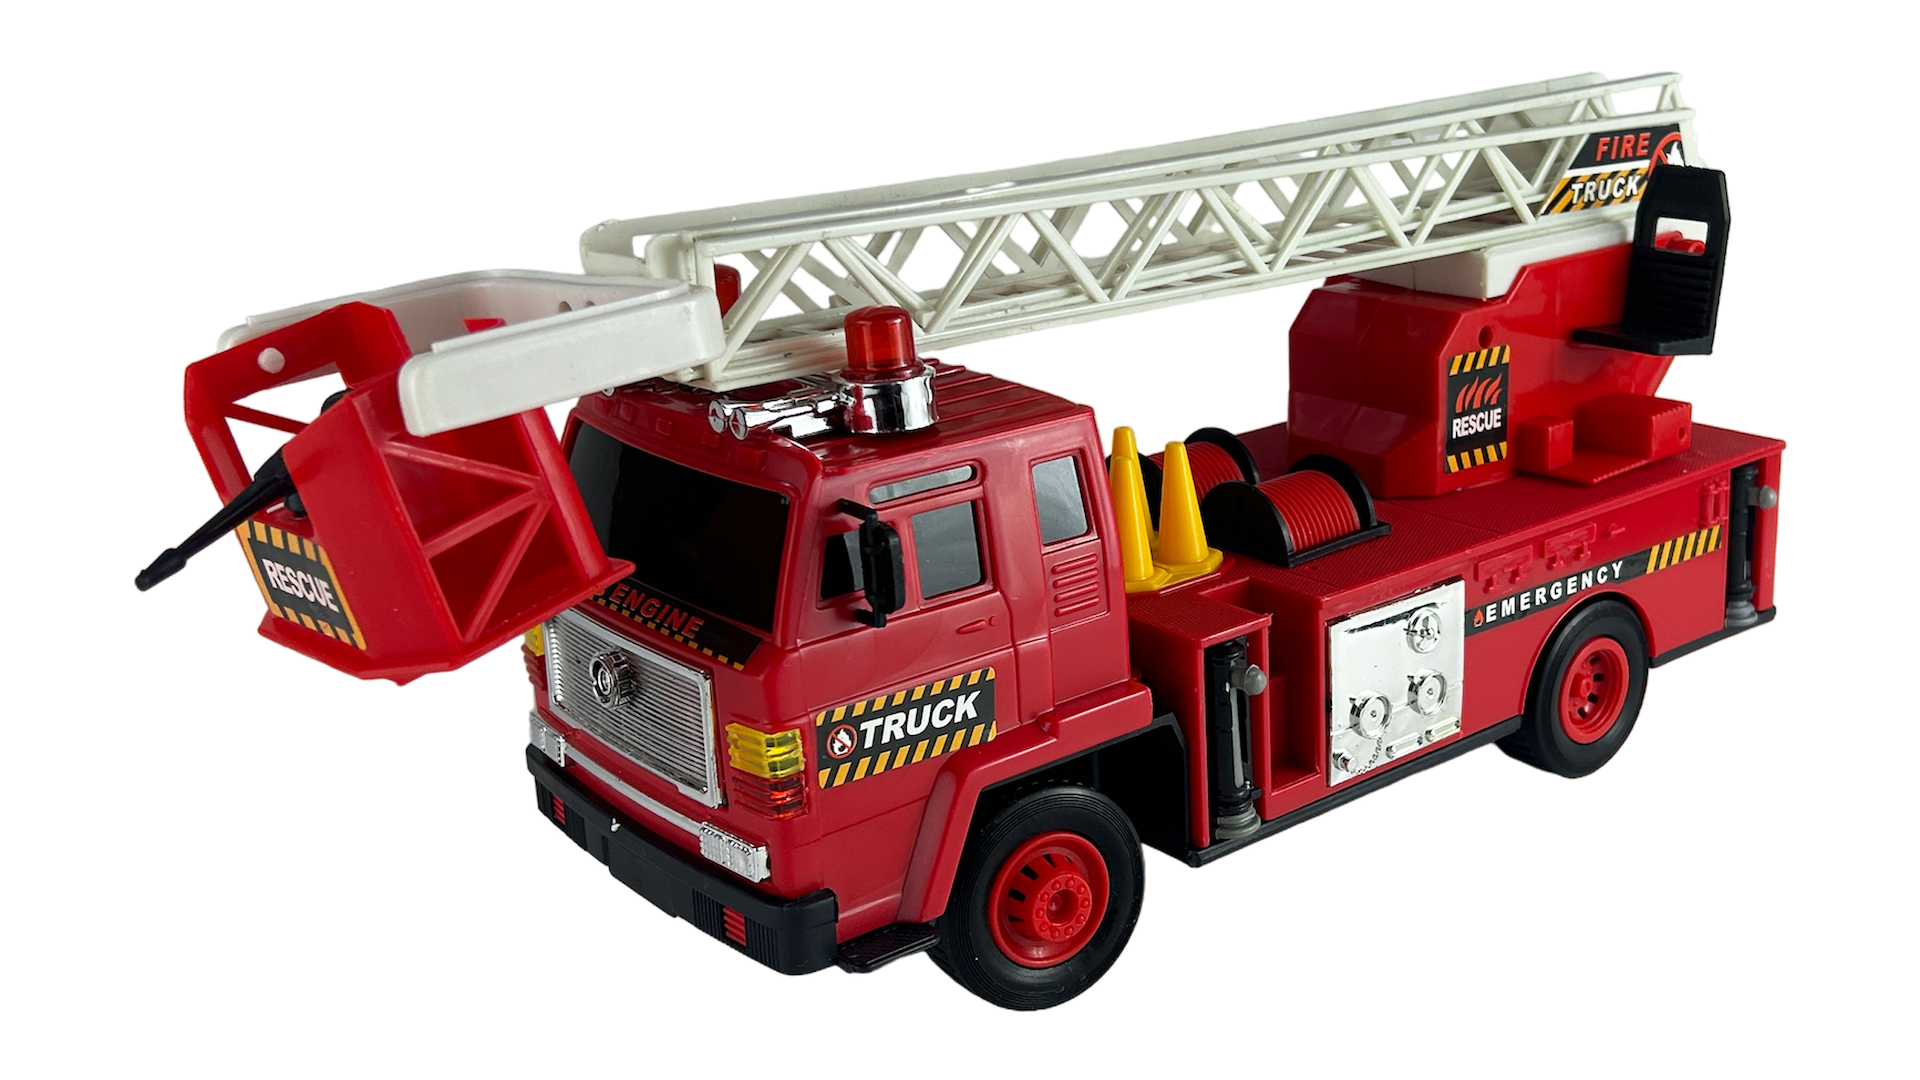 Радиоуправляемая Пожарная Машина Rui Feng на п/у Fire Engine Truck 27Mhz радиоуправляемая пожарная машина rui feng на п у fire engine truck 27mhz